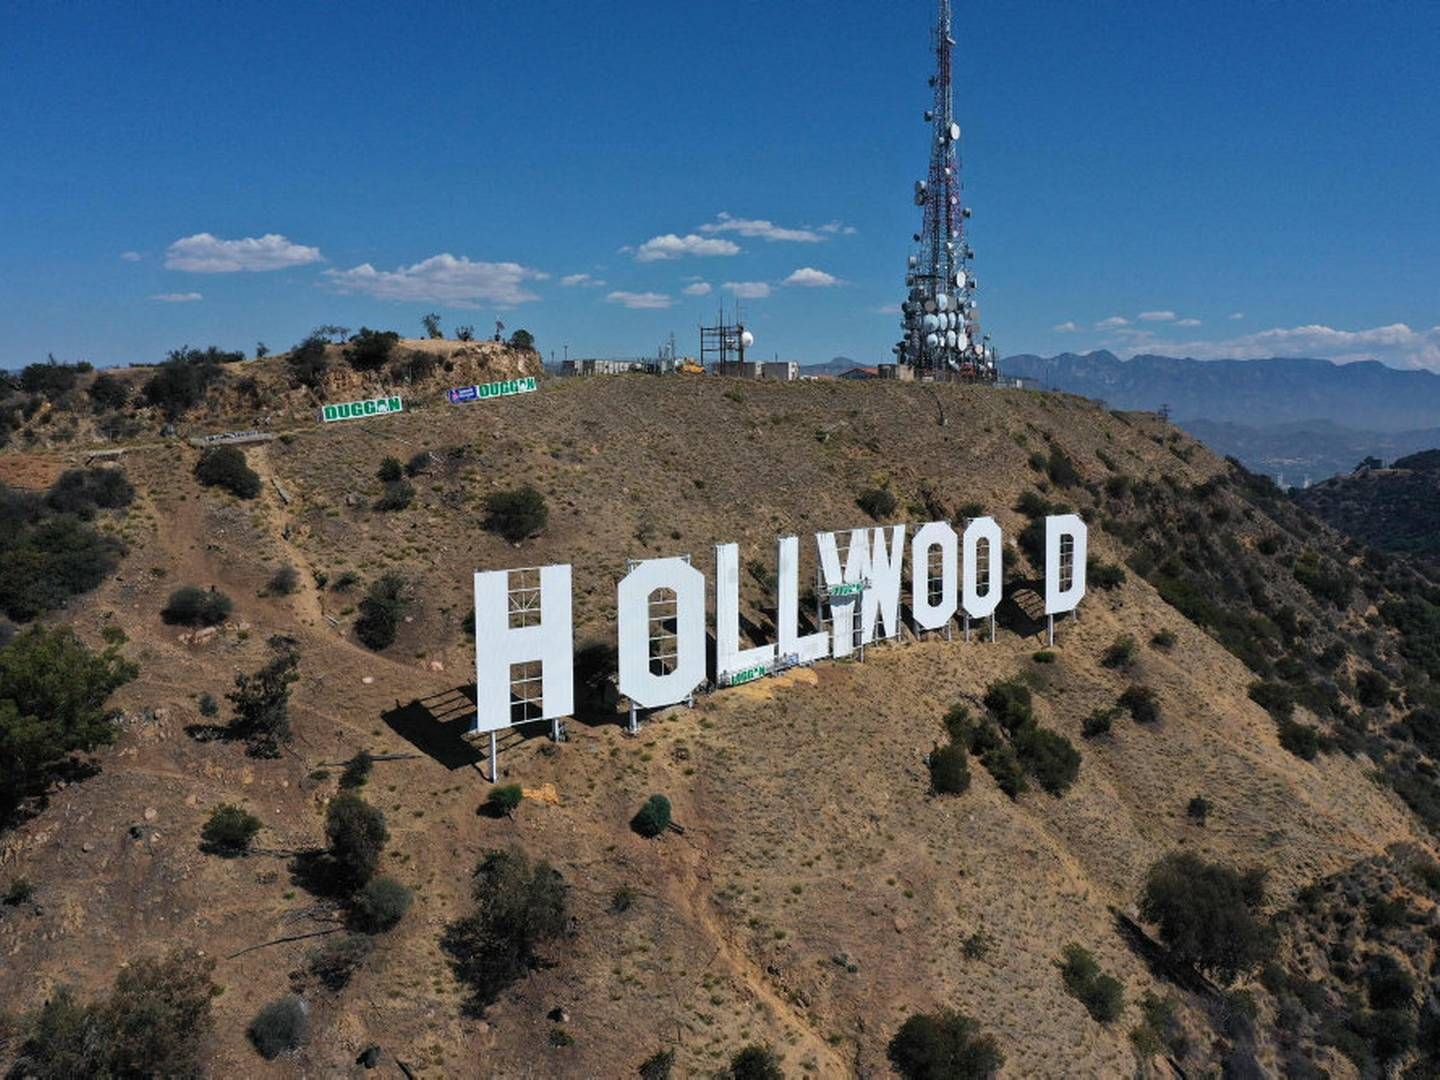 Ifølge fagforeningen SAG-AFTRA stemte 78 pct. for aftalen. Dermed er den månedlange konflikt mellem skuespillere og studier i Hollywood officielt slut. | Foto: Robyn Beck/Ritzau Scanpix